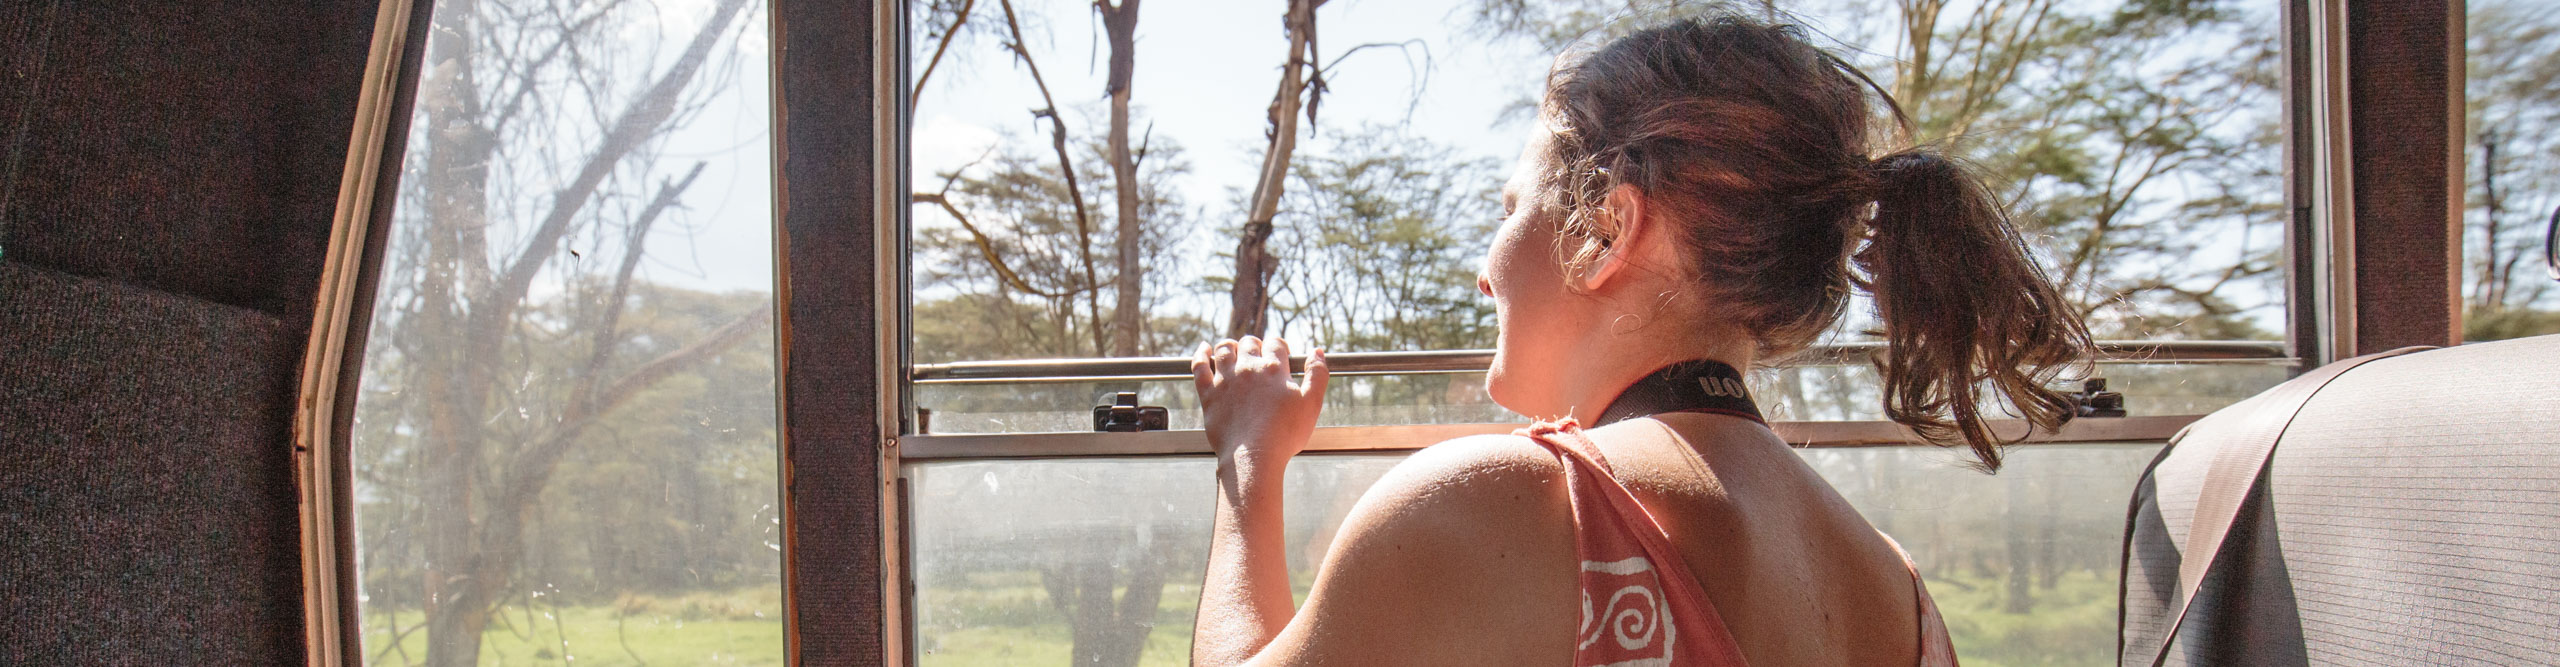 Women on bus looking at wildlife in Nairobi, Kenya